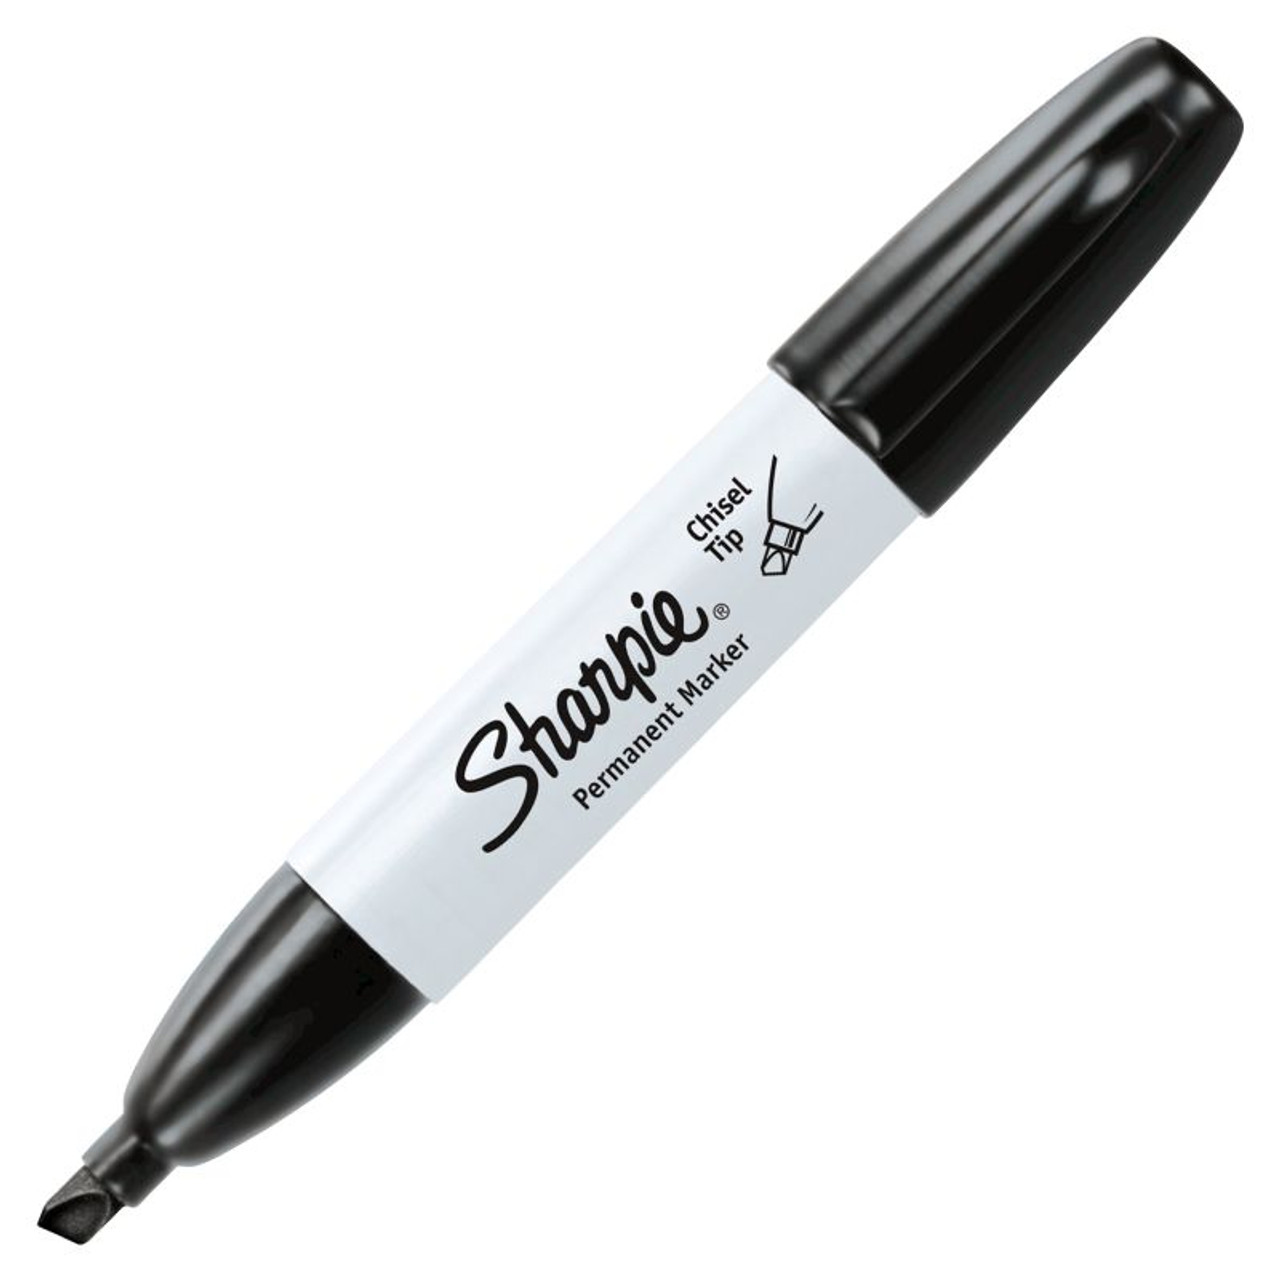 Sharpie Felt Tip Markers - FLAX art & design